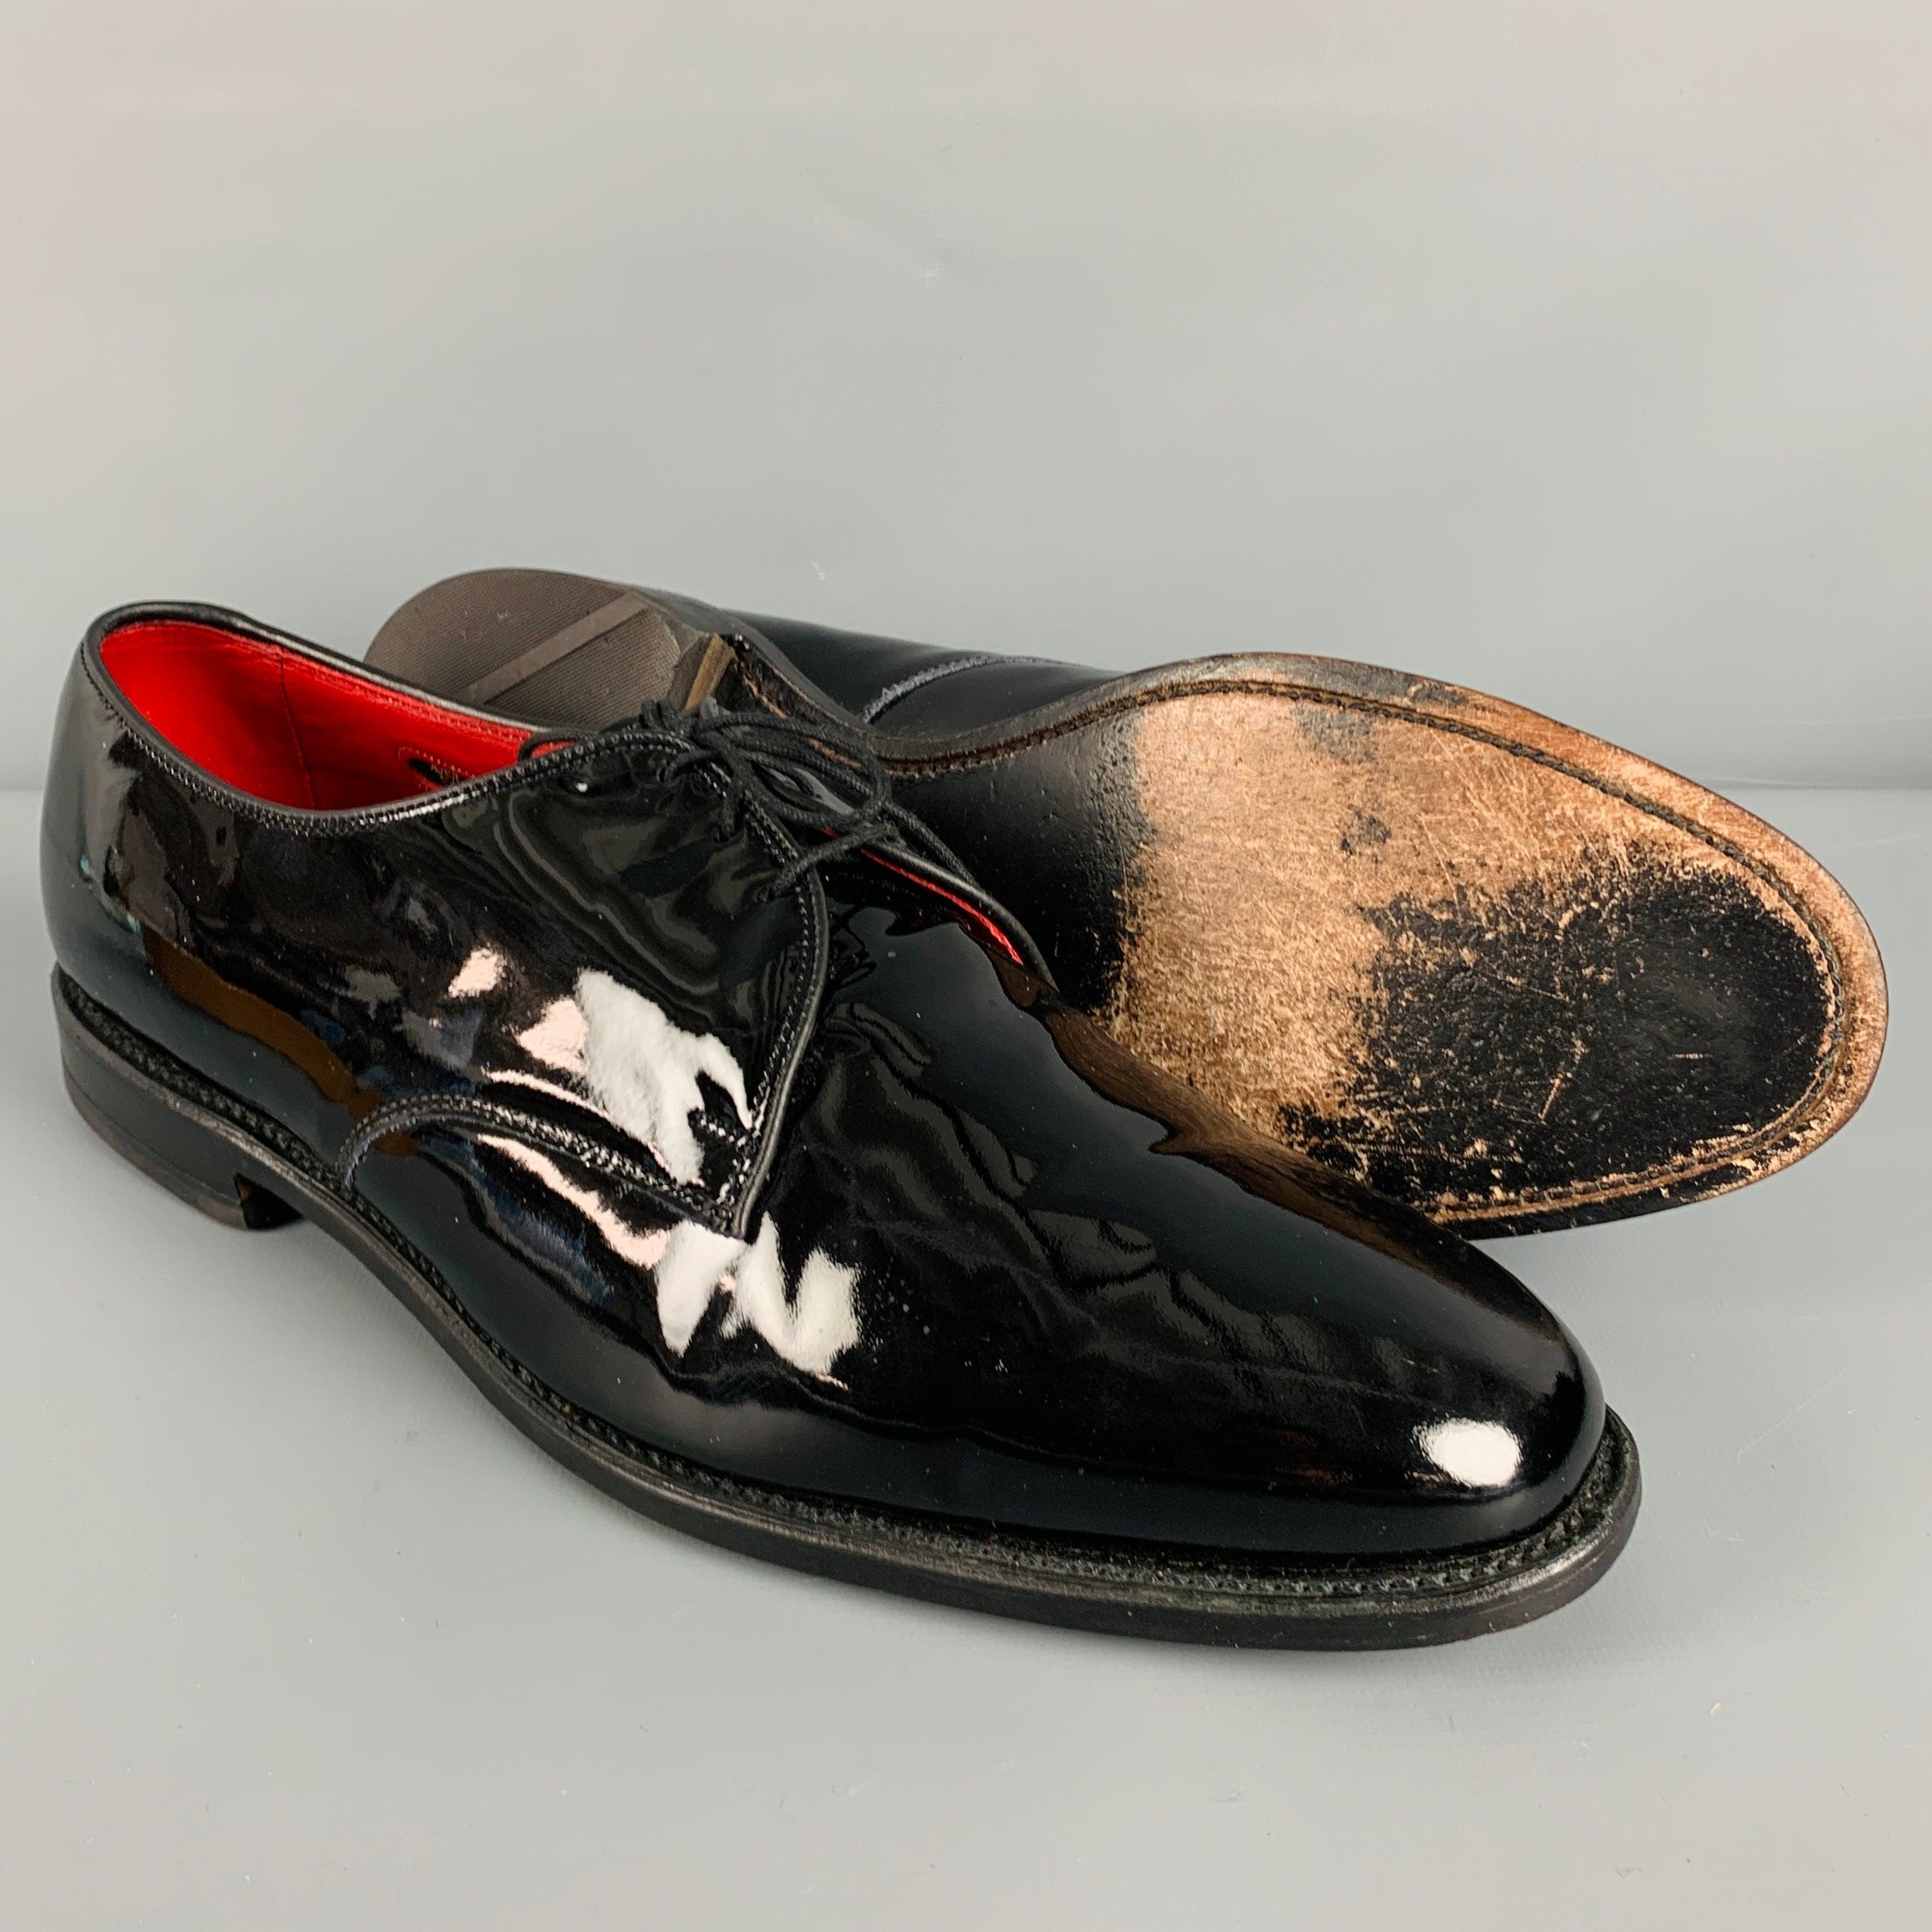 ALLEN EDMONDS Size 13 Black Patent Leather Lace-Up Shoes For Sale 1